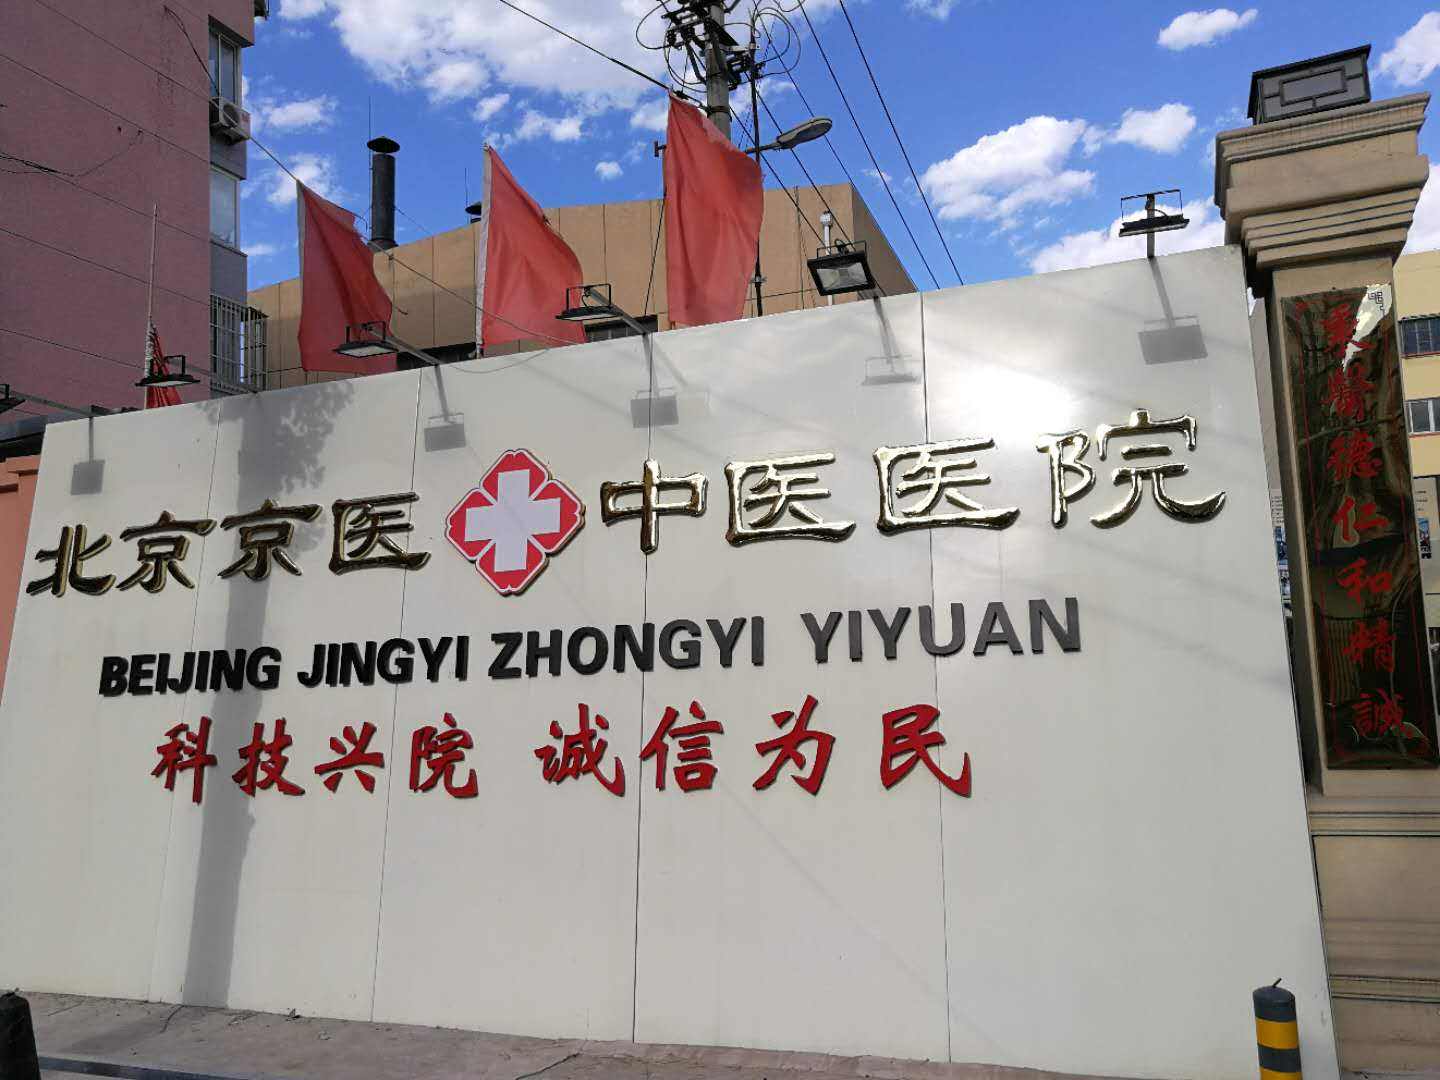 包含北京四惠中医医院挂号号贩子联系方式第一时间安排联系方式安全可靠的词条